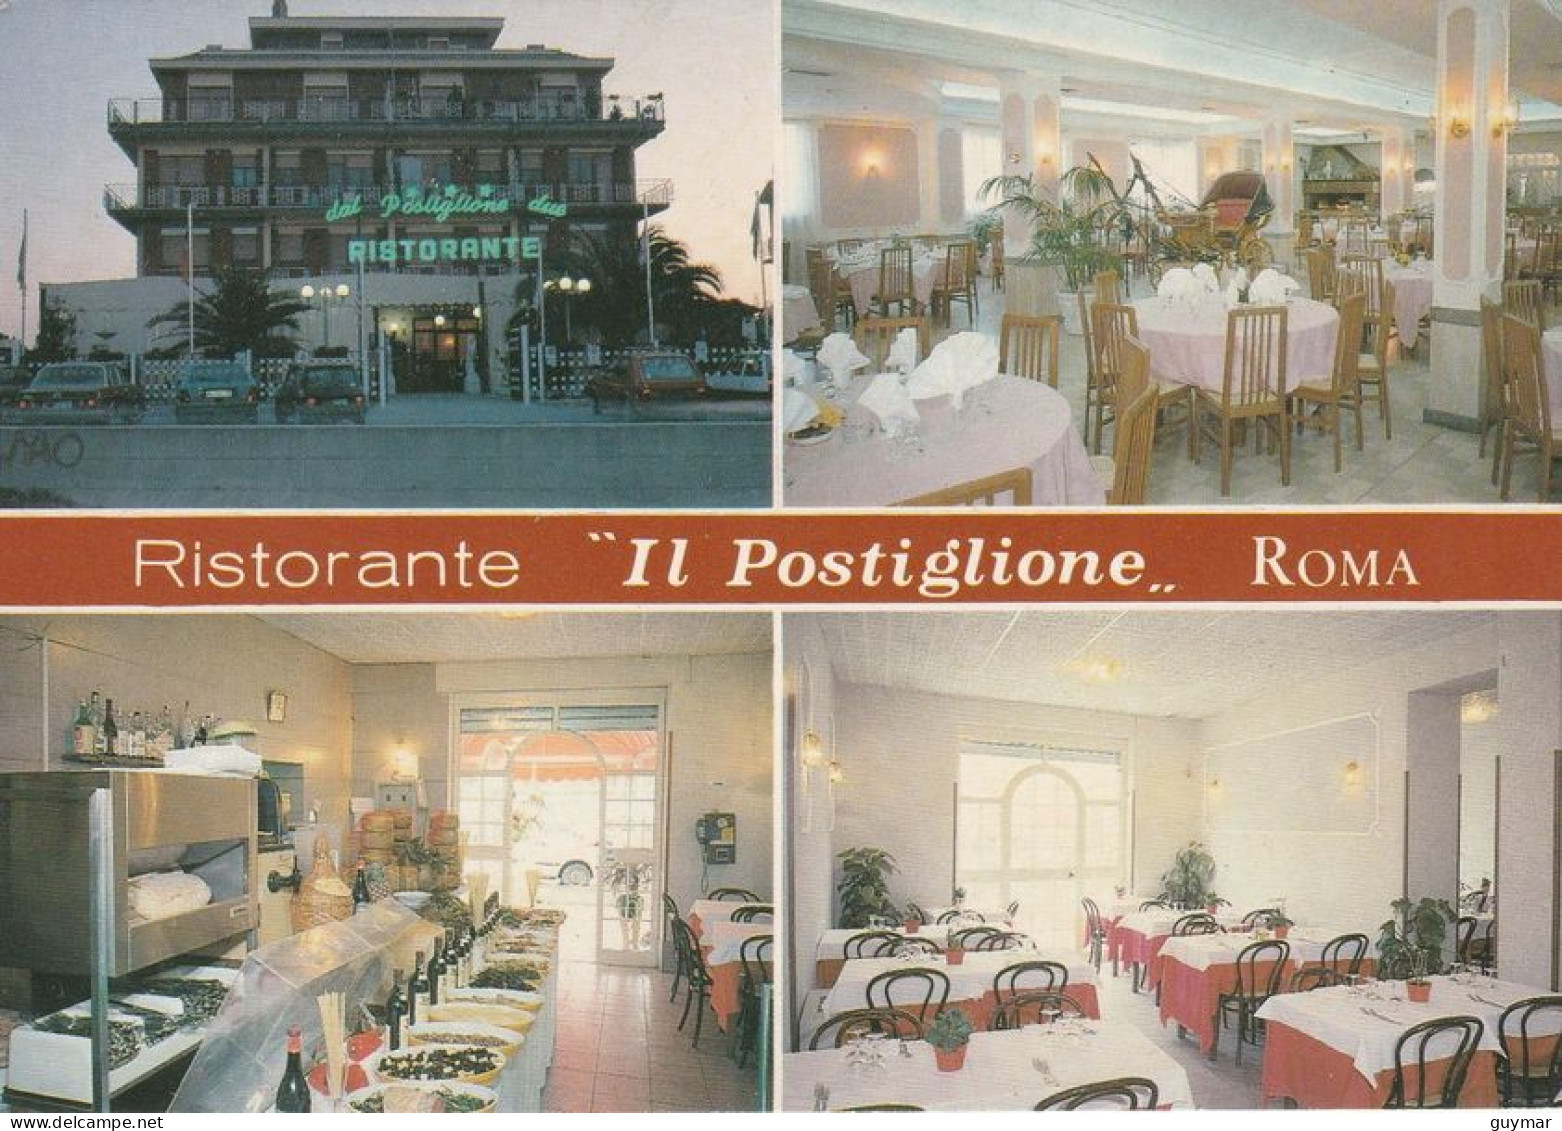 ROMA - RISTORANTE - IL POSTIGLIONE - 5566 - Bars, Hotels & Restaurants